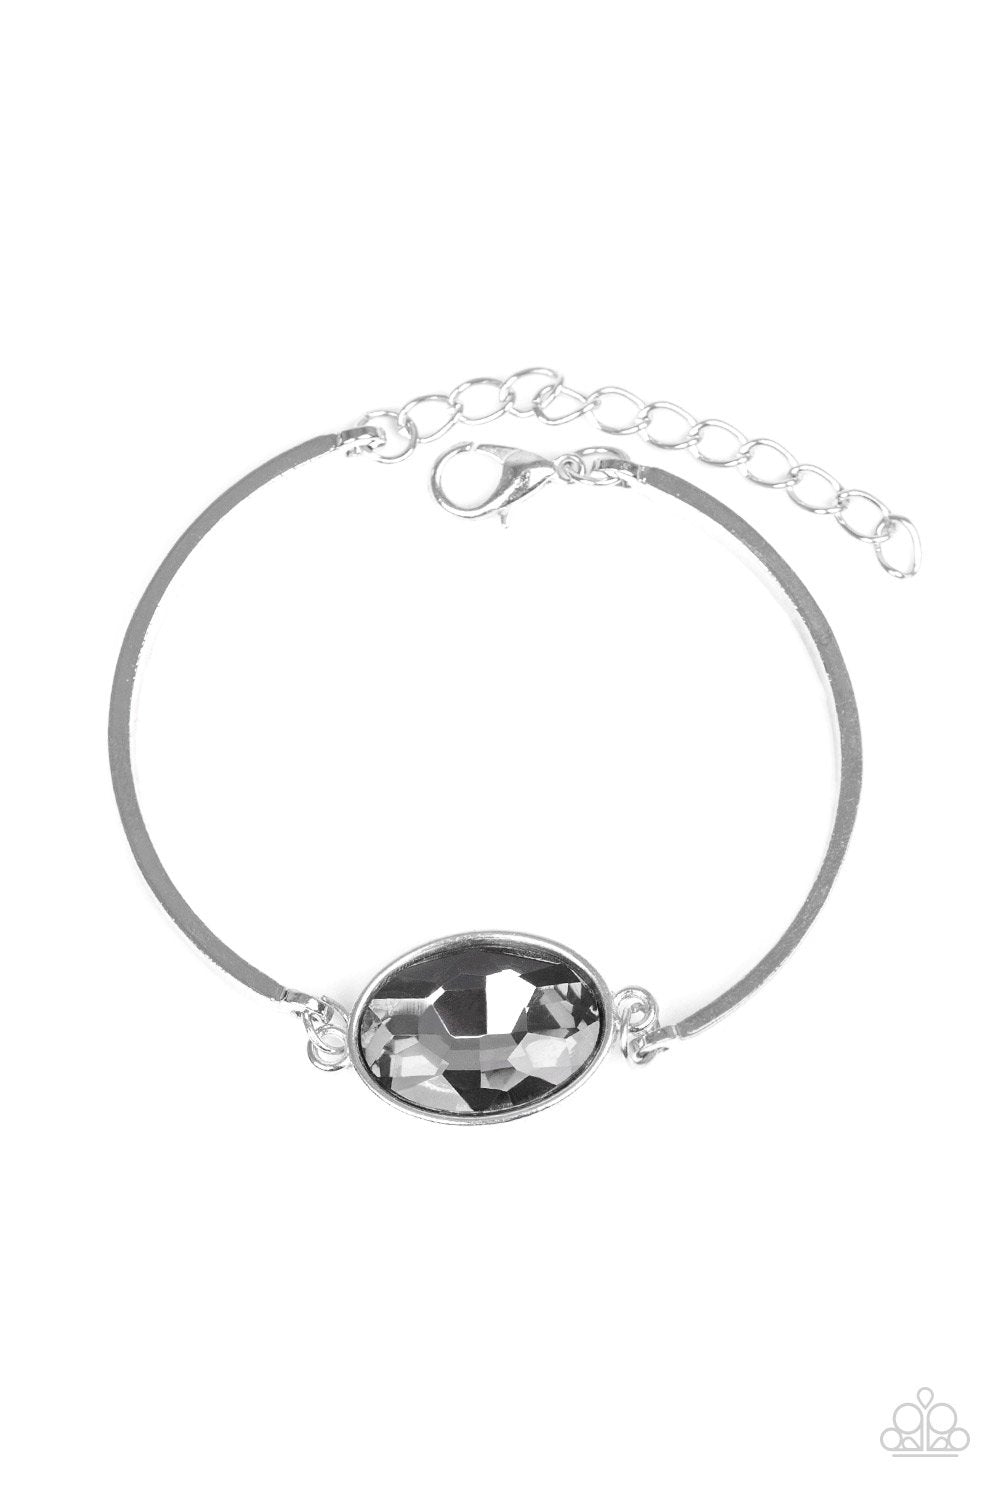 Definitely Dashing Silver Gem Bracelet - Paparazzi Accessories-CarasShop.com - $5 Jewelry by Cara Jewels